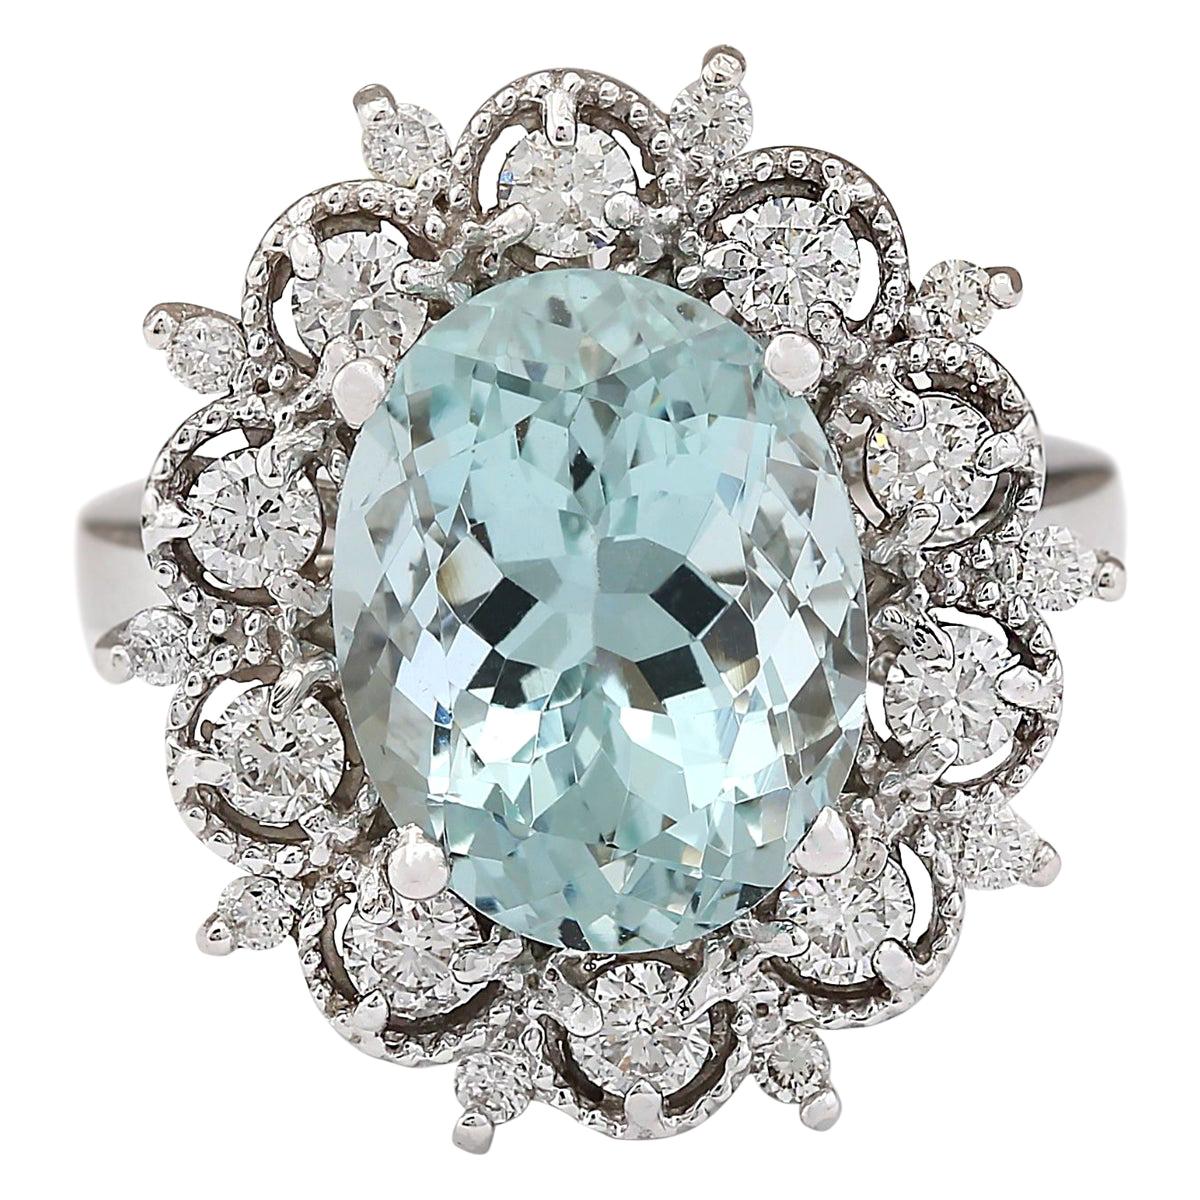 Stunning Natural Aquamarine Diamond Ring In 14 Karat White Gold 